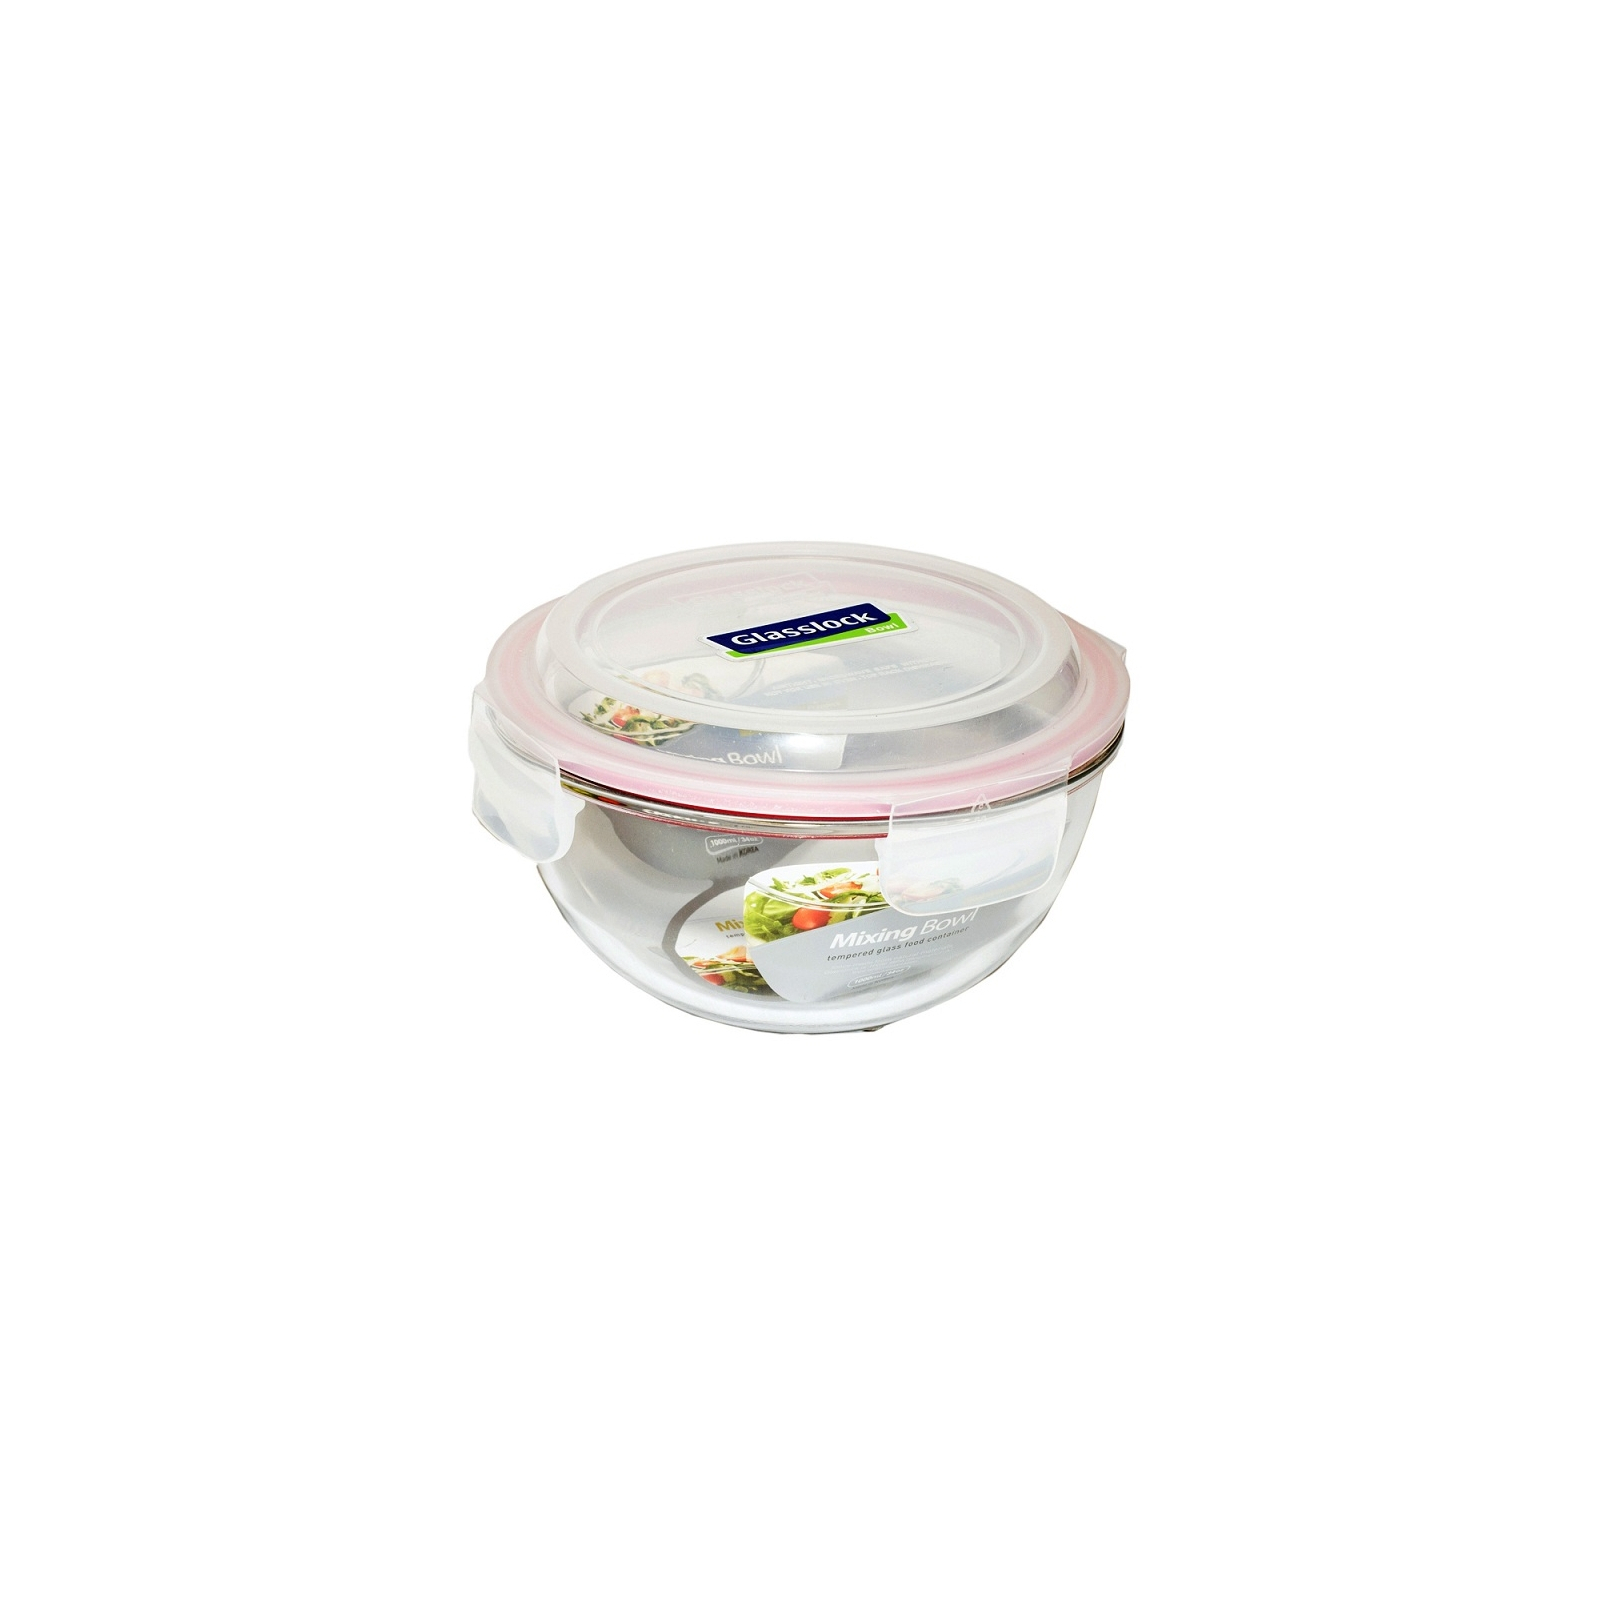 Пищевой контейнер Glasslock кругл. 4,0 л (MBCB-400)